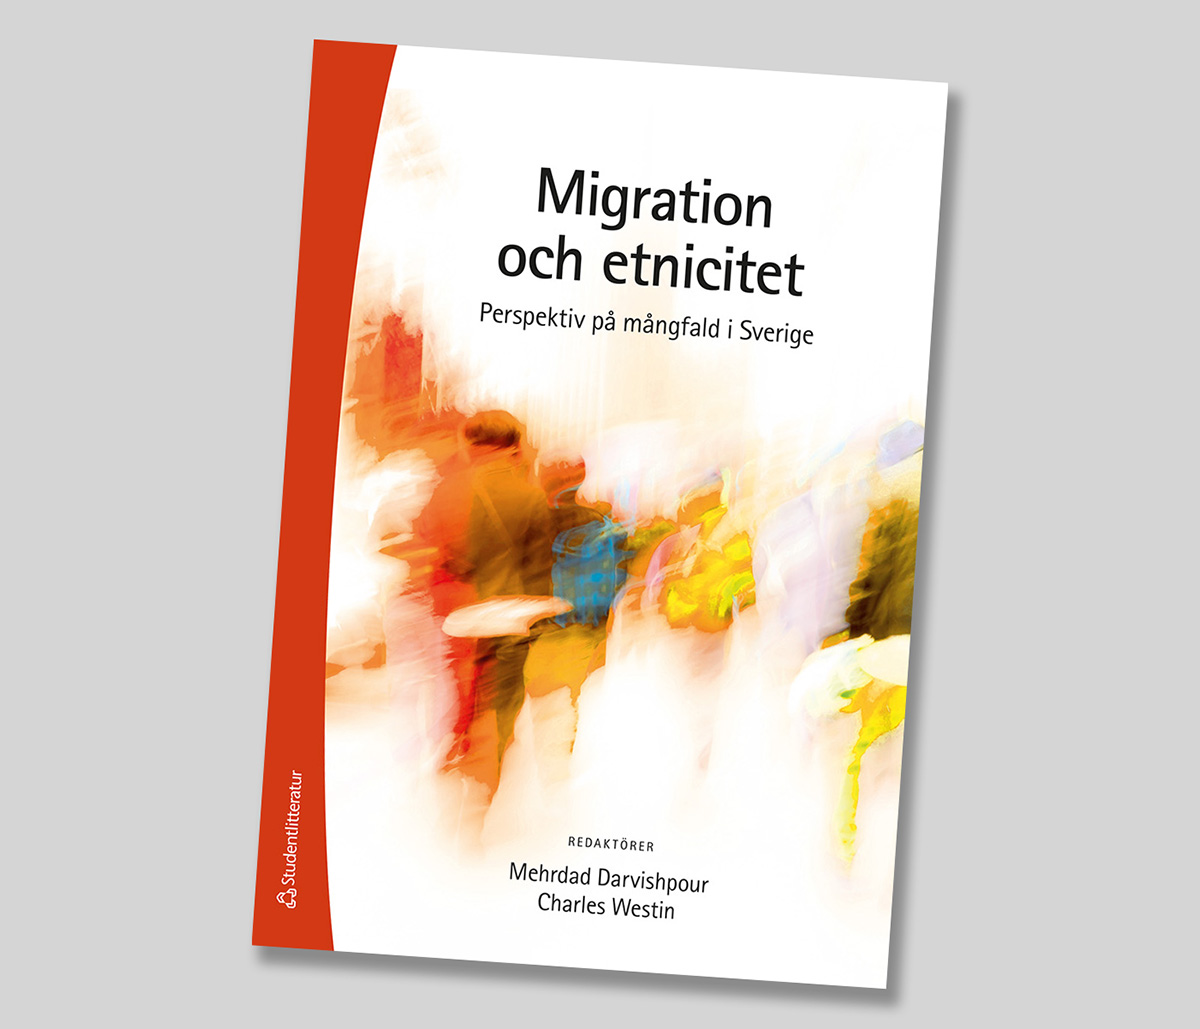 The book ”Migration and ethnicity. Perspectives on diversity in Sweden (Migration och etnicitet. Perspektiv på mångfald i Sverige").